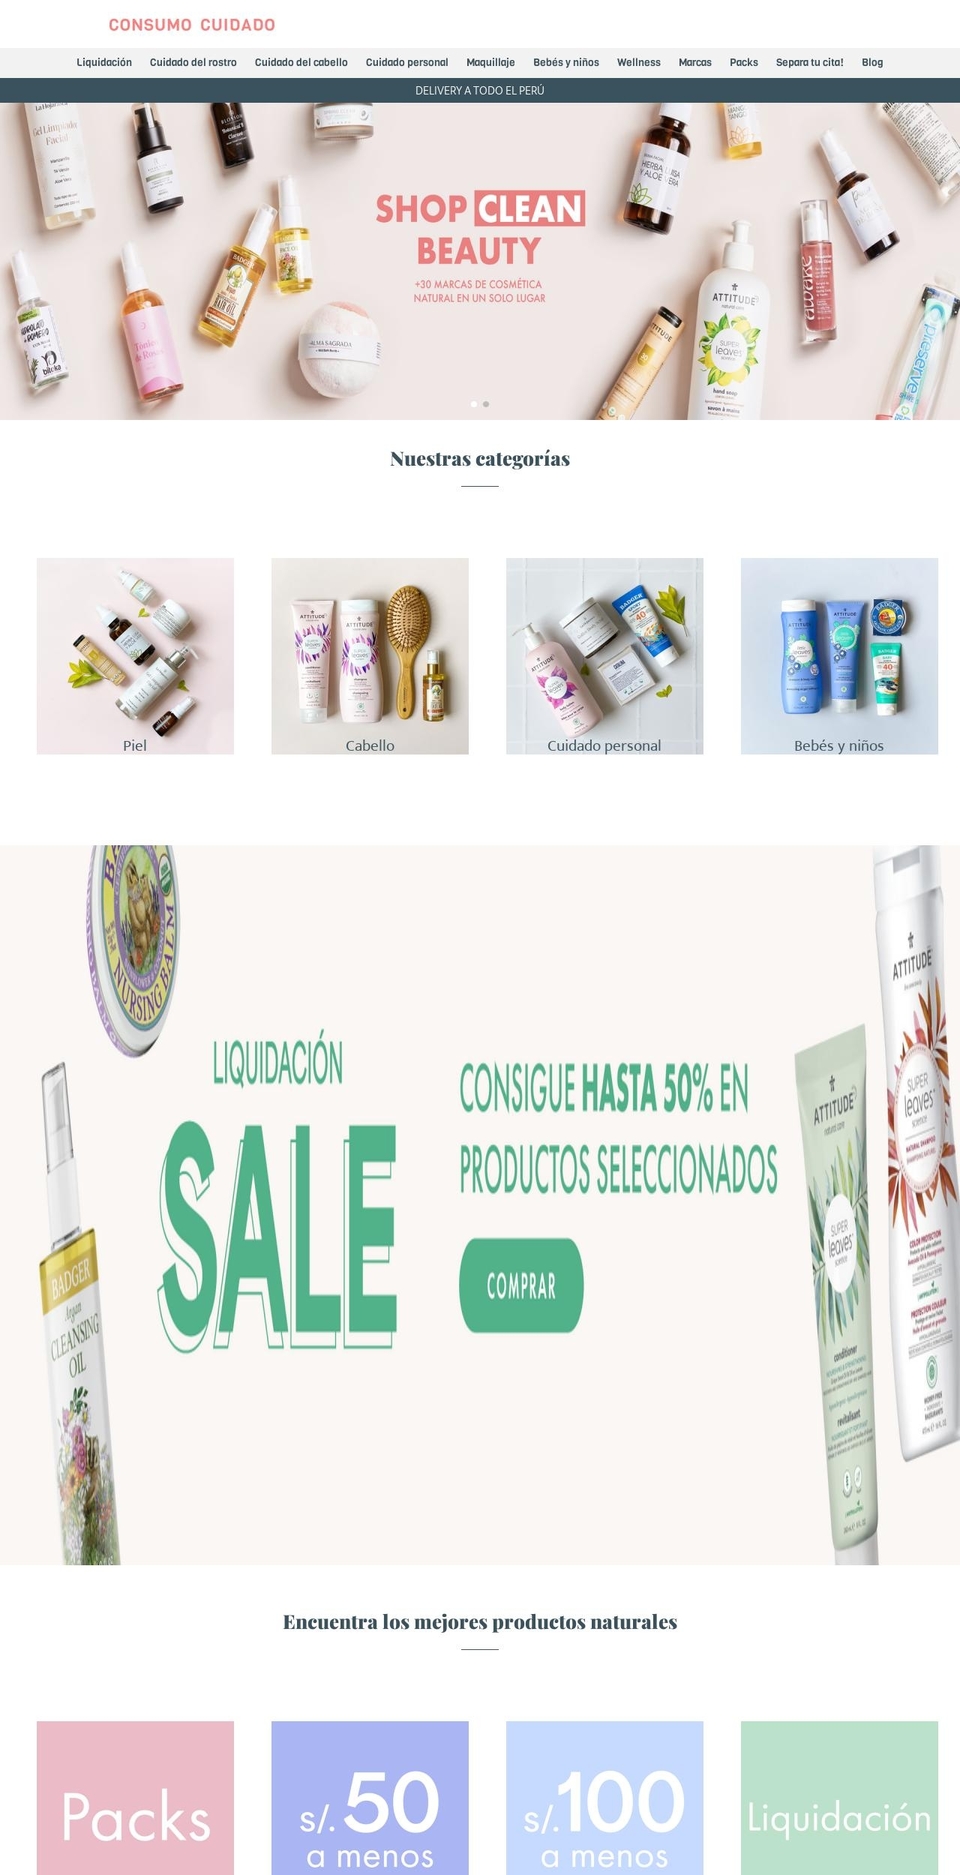 iOne Shopify theme site example consumocuidado.com.pe